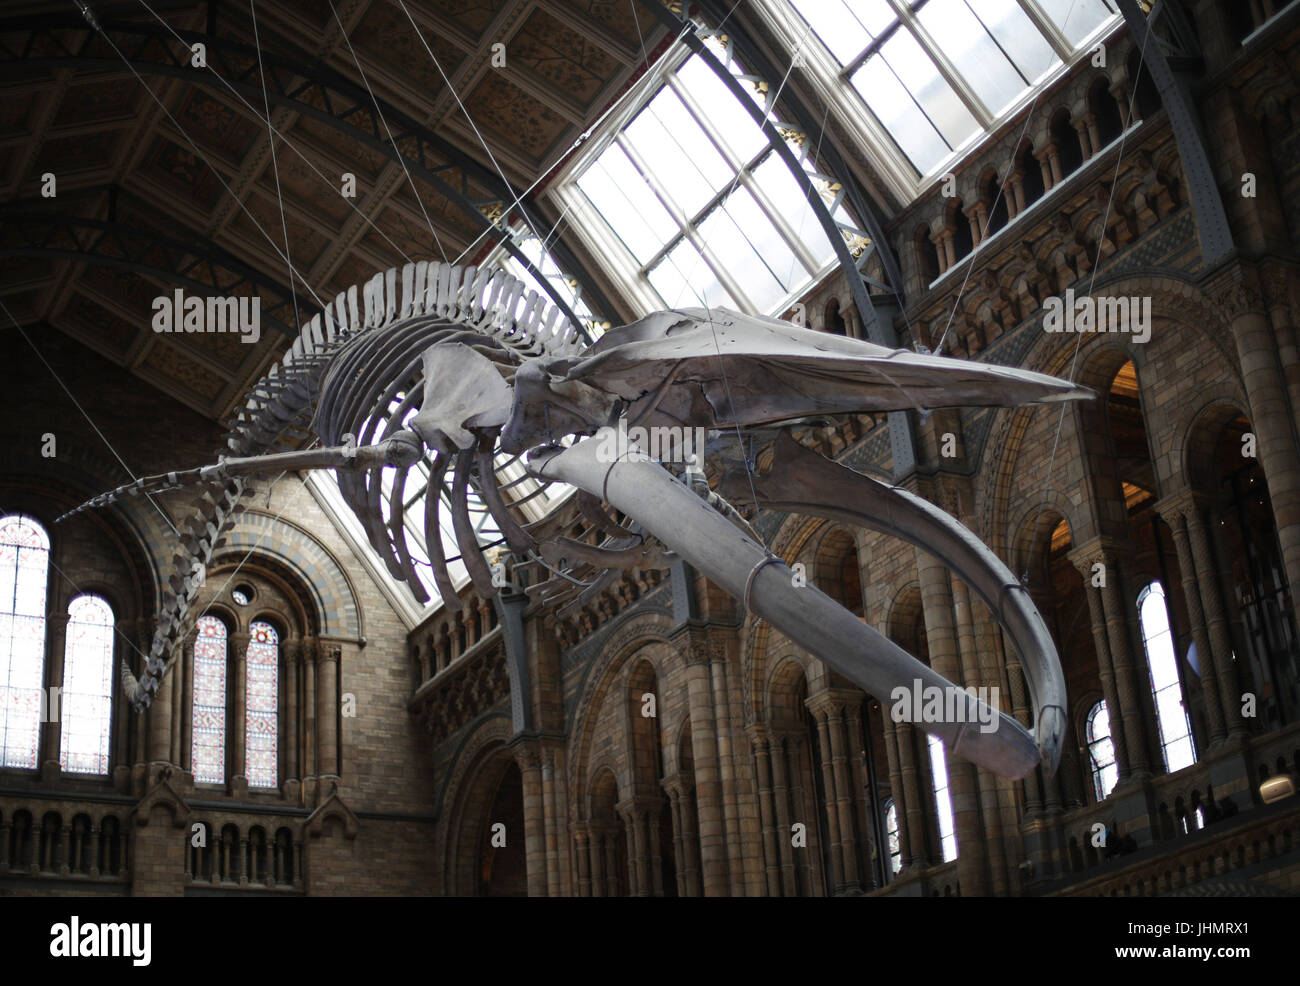 La nuova mostra di un azzurro di scheletro di balena denominata "speranza" sul display, come la sala Hintze apre presso il Museo di Storia Naturale di Londra. Foto Stock